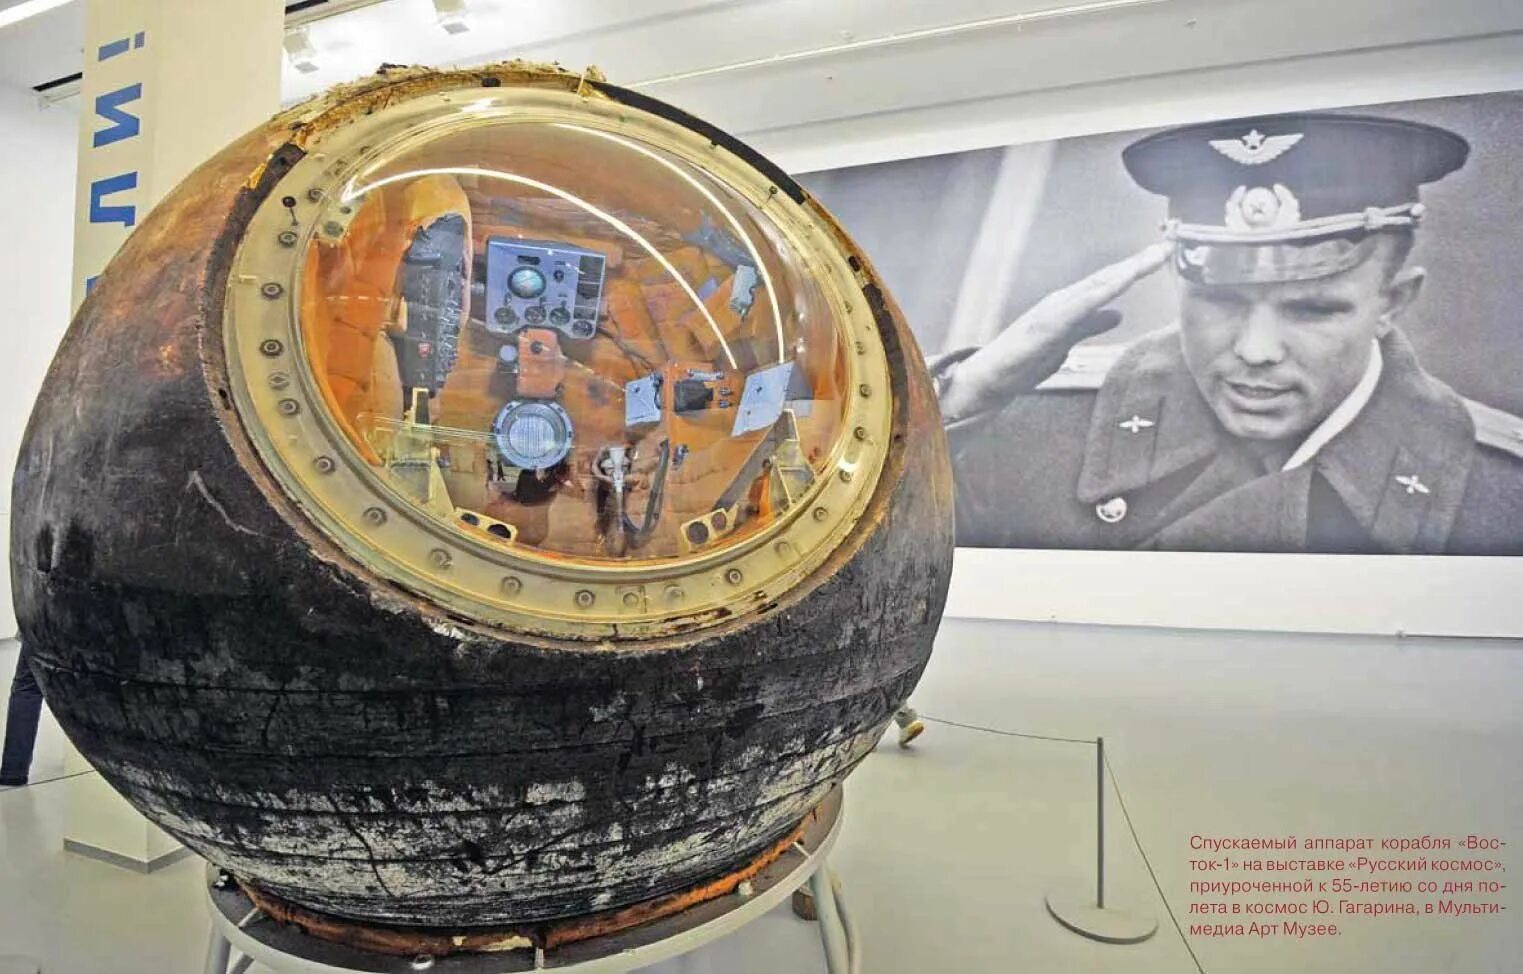 Космический аппарат Гагарина Восток-1. Космический корабль Восток 1 Юрия Гагарина. Спускаемый аппарат корабля «Восток-1». Гагарин спускаемый аппарат Восток 1.